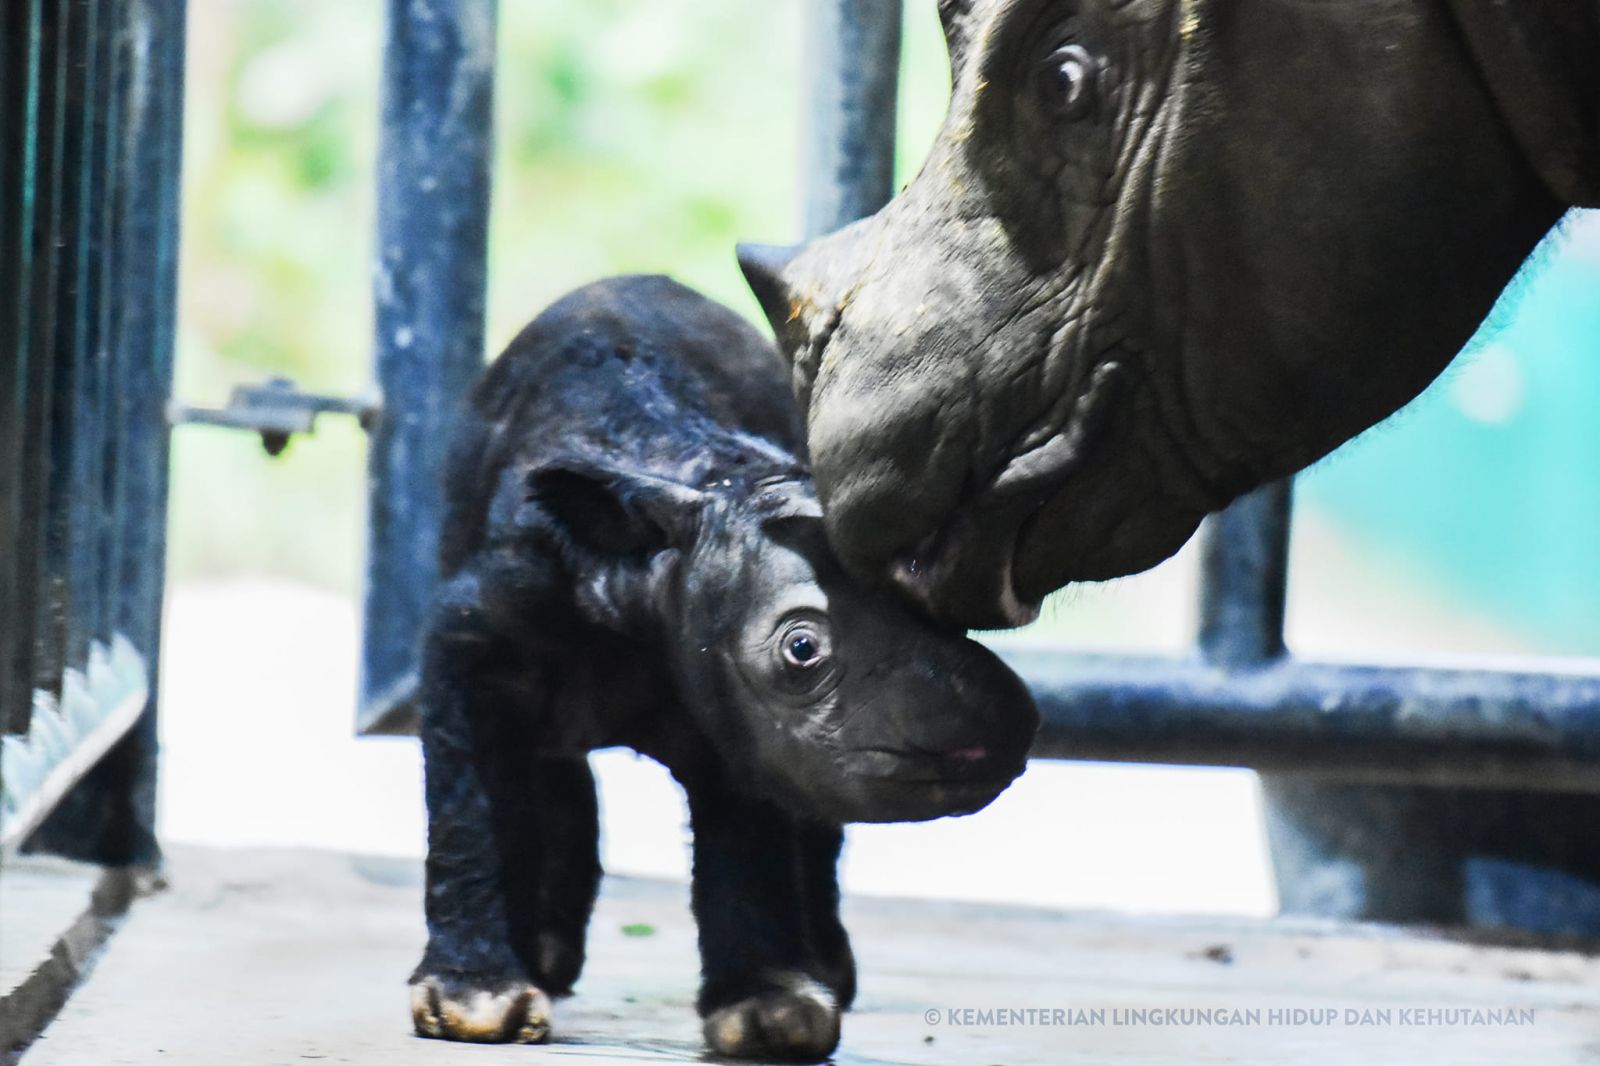 Un pui de rinocer de Sumatra s-a născut în Indonezia